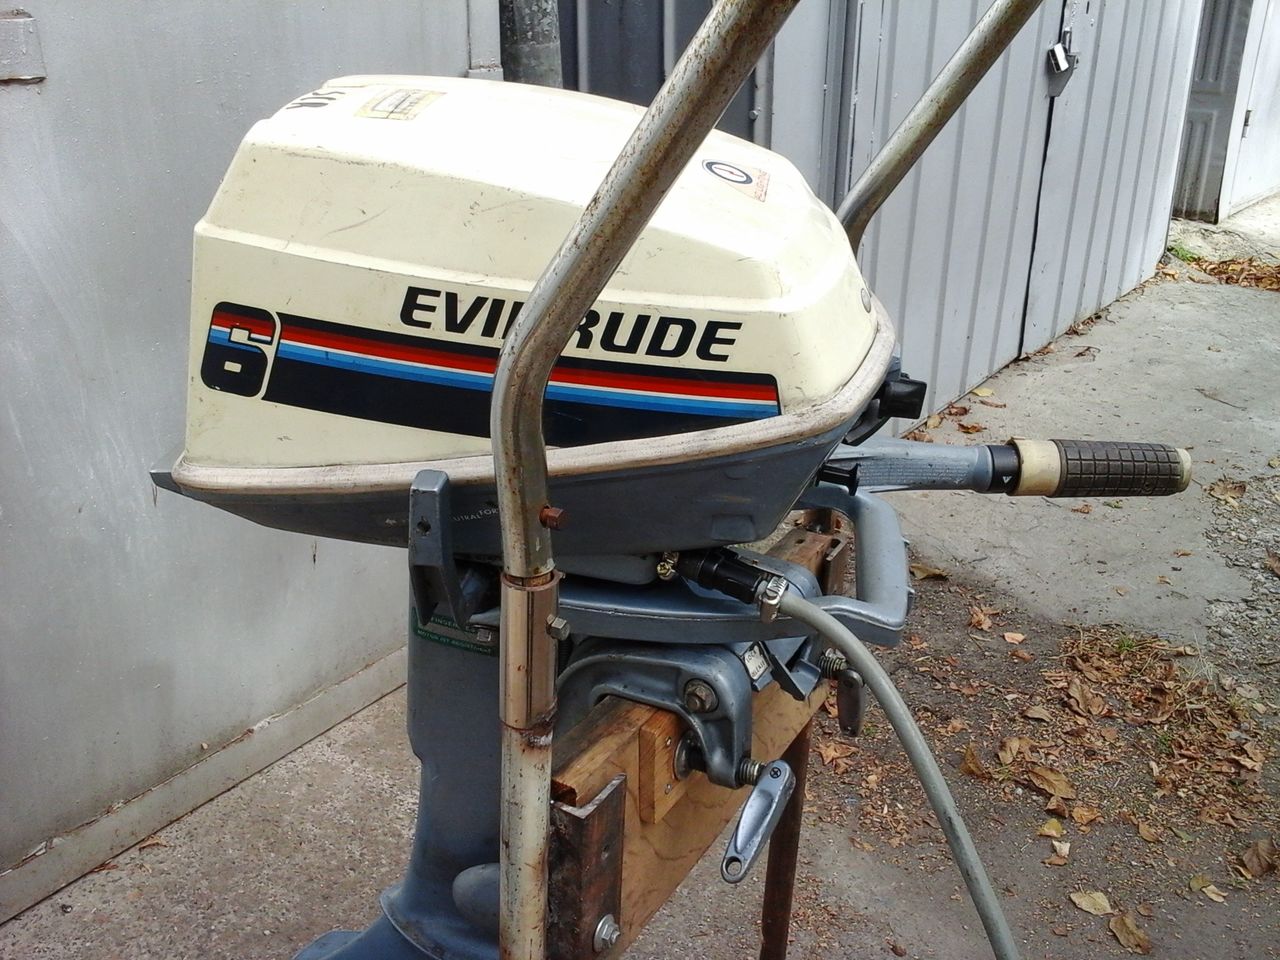 Купить мотор бу томск. Лодочный мотор Джонсон Эвинруд 4 л.с. Лодочный мотор Evinrude 4. Evinrude 2 мотор Лодочный. Evinrude Лодочный мотор 4 1970.